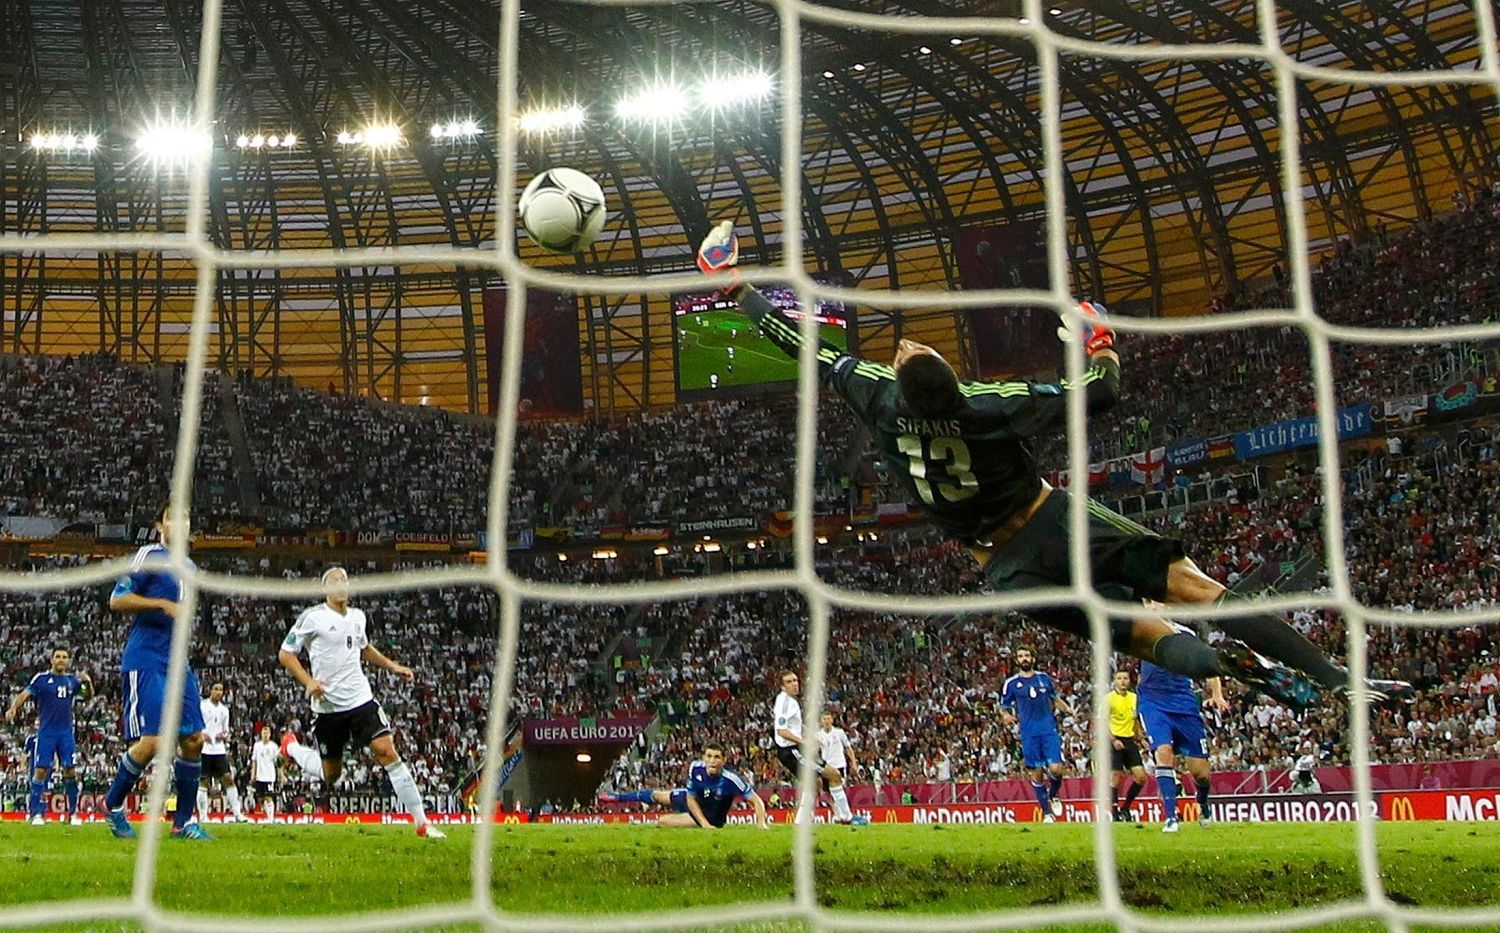 Philipp Lahm střílí gól za záda Michalise Sifakise během utkání Německo - Řecko ve čtvrtfinále Eura 2012